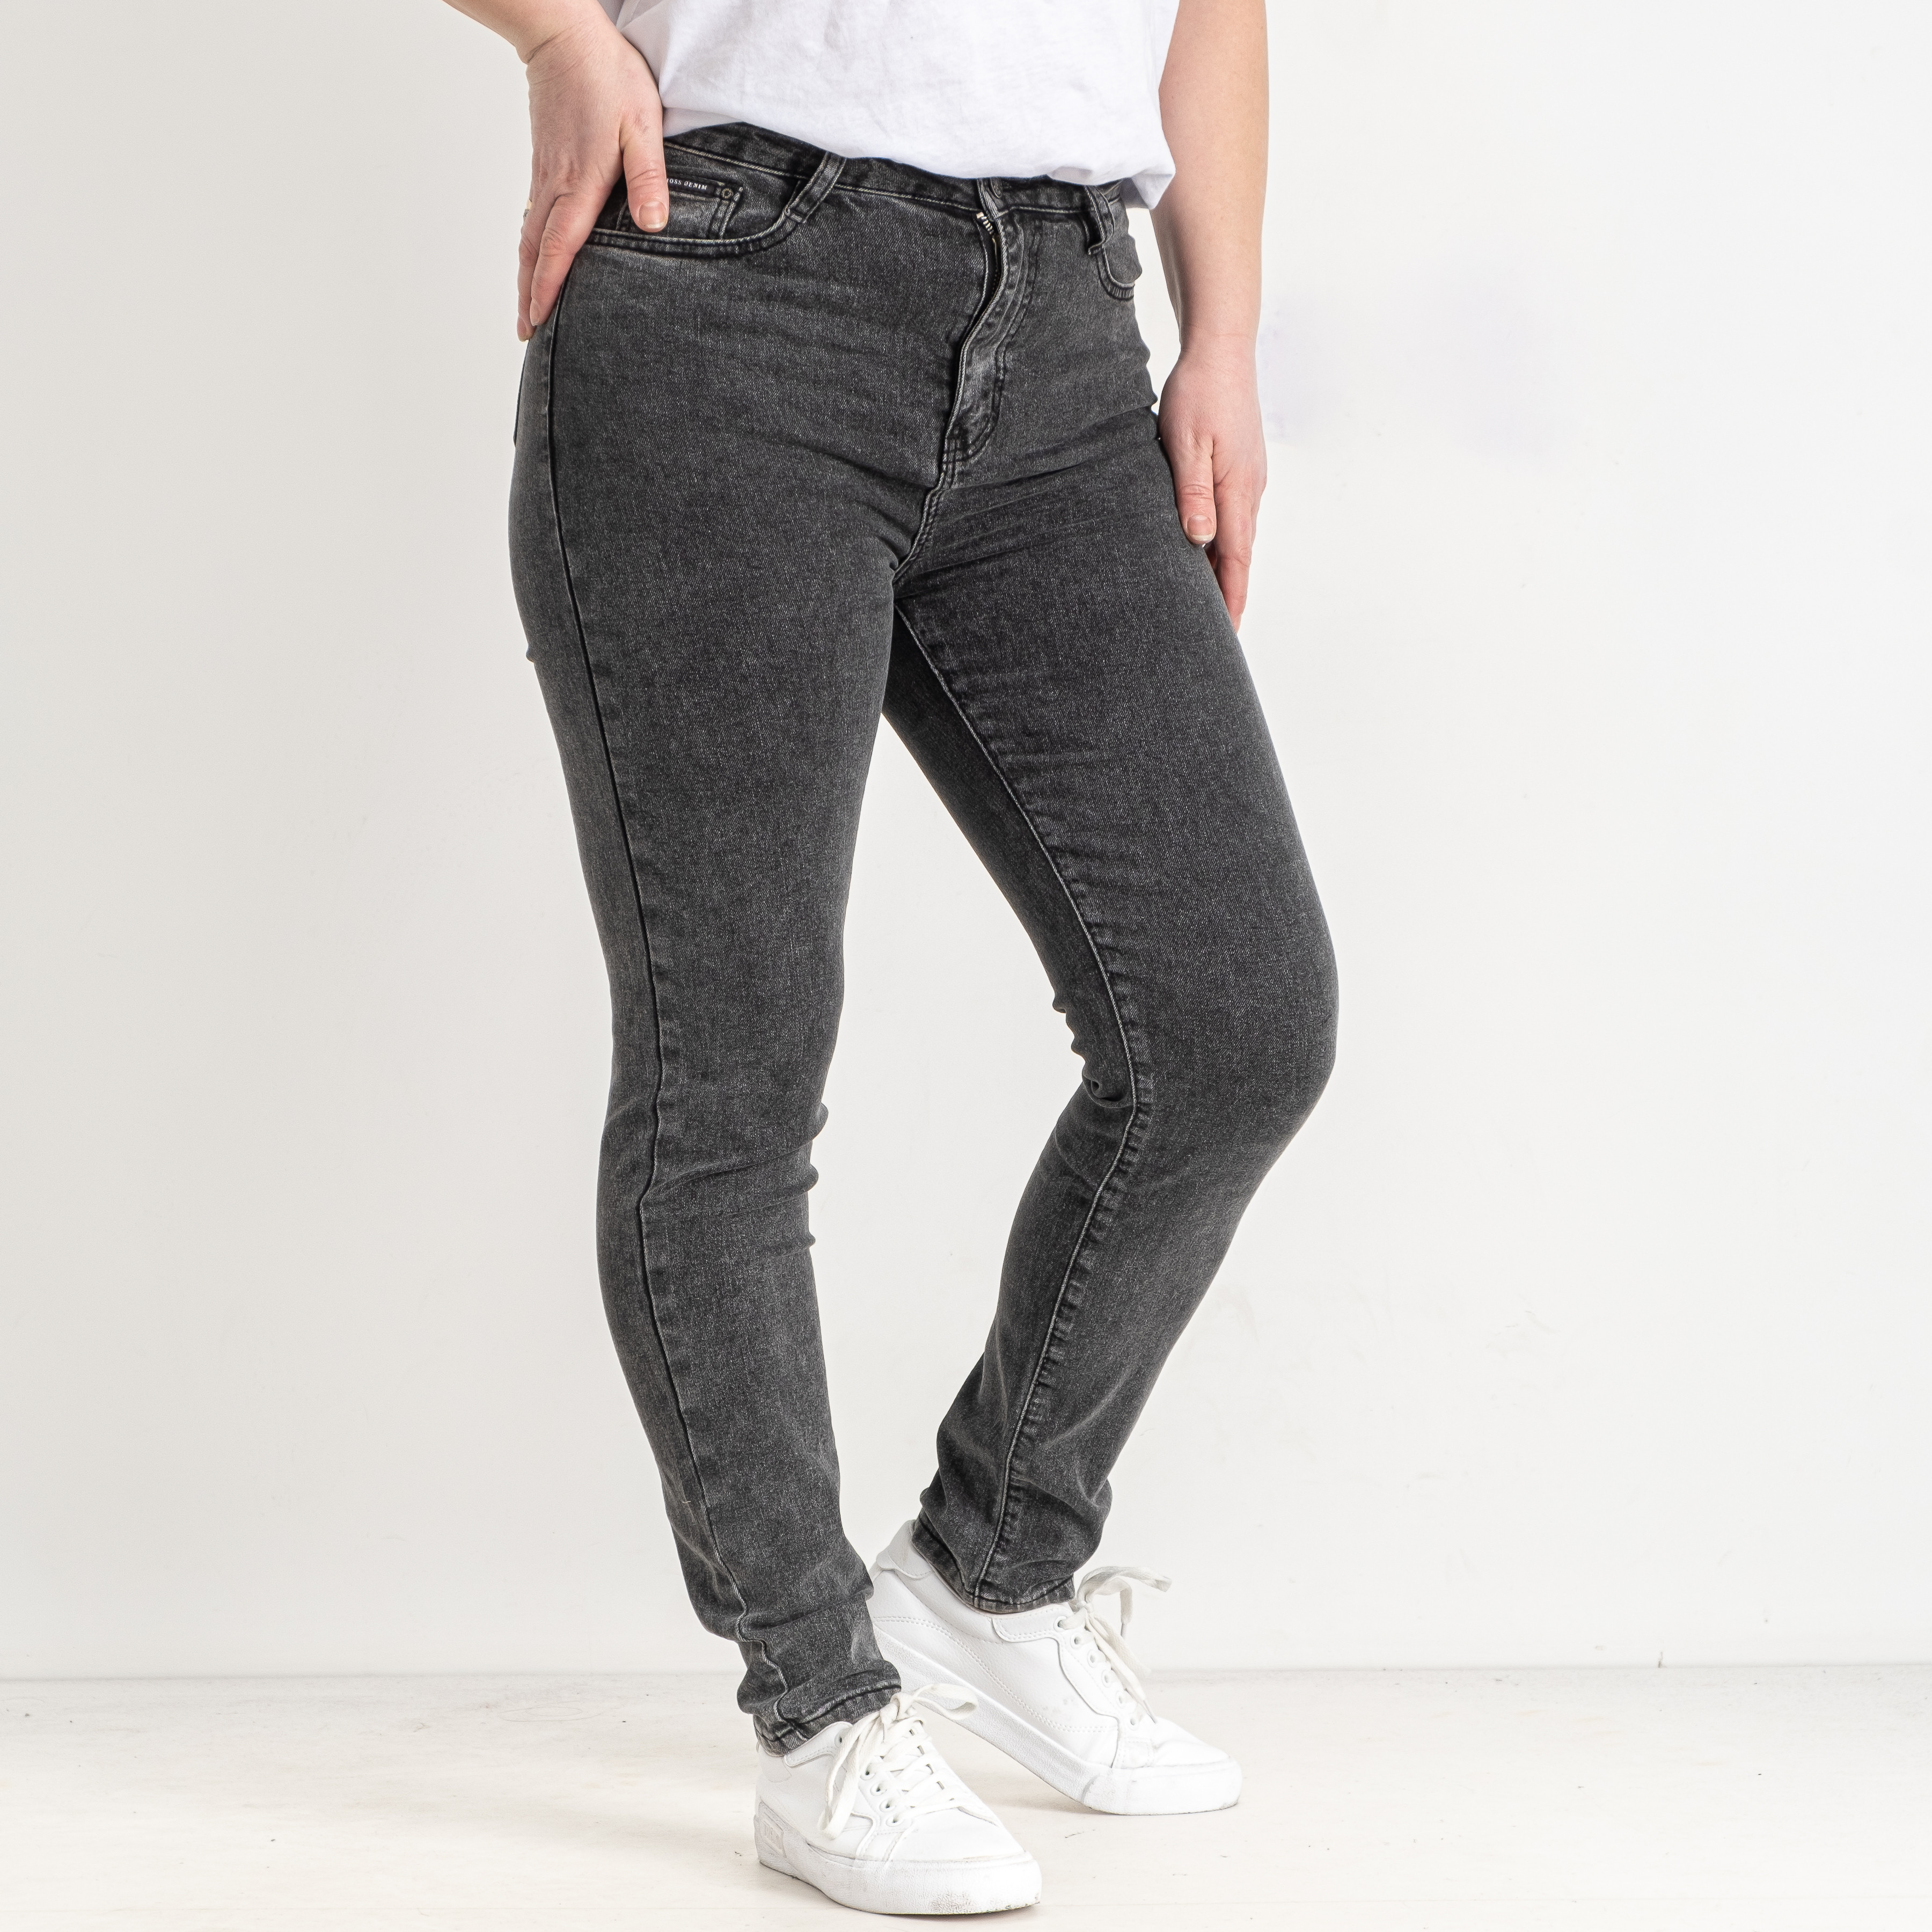 1060 темно-серые женские джинсы (KT.MOSS, стрейчевые, 6 ед. размеры батал: 31. 32. 33. 34. 36. 38)  